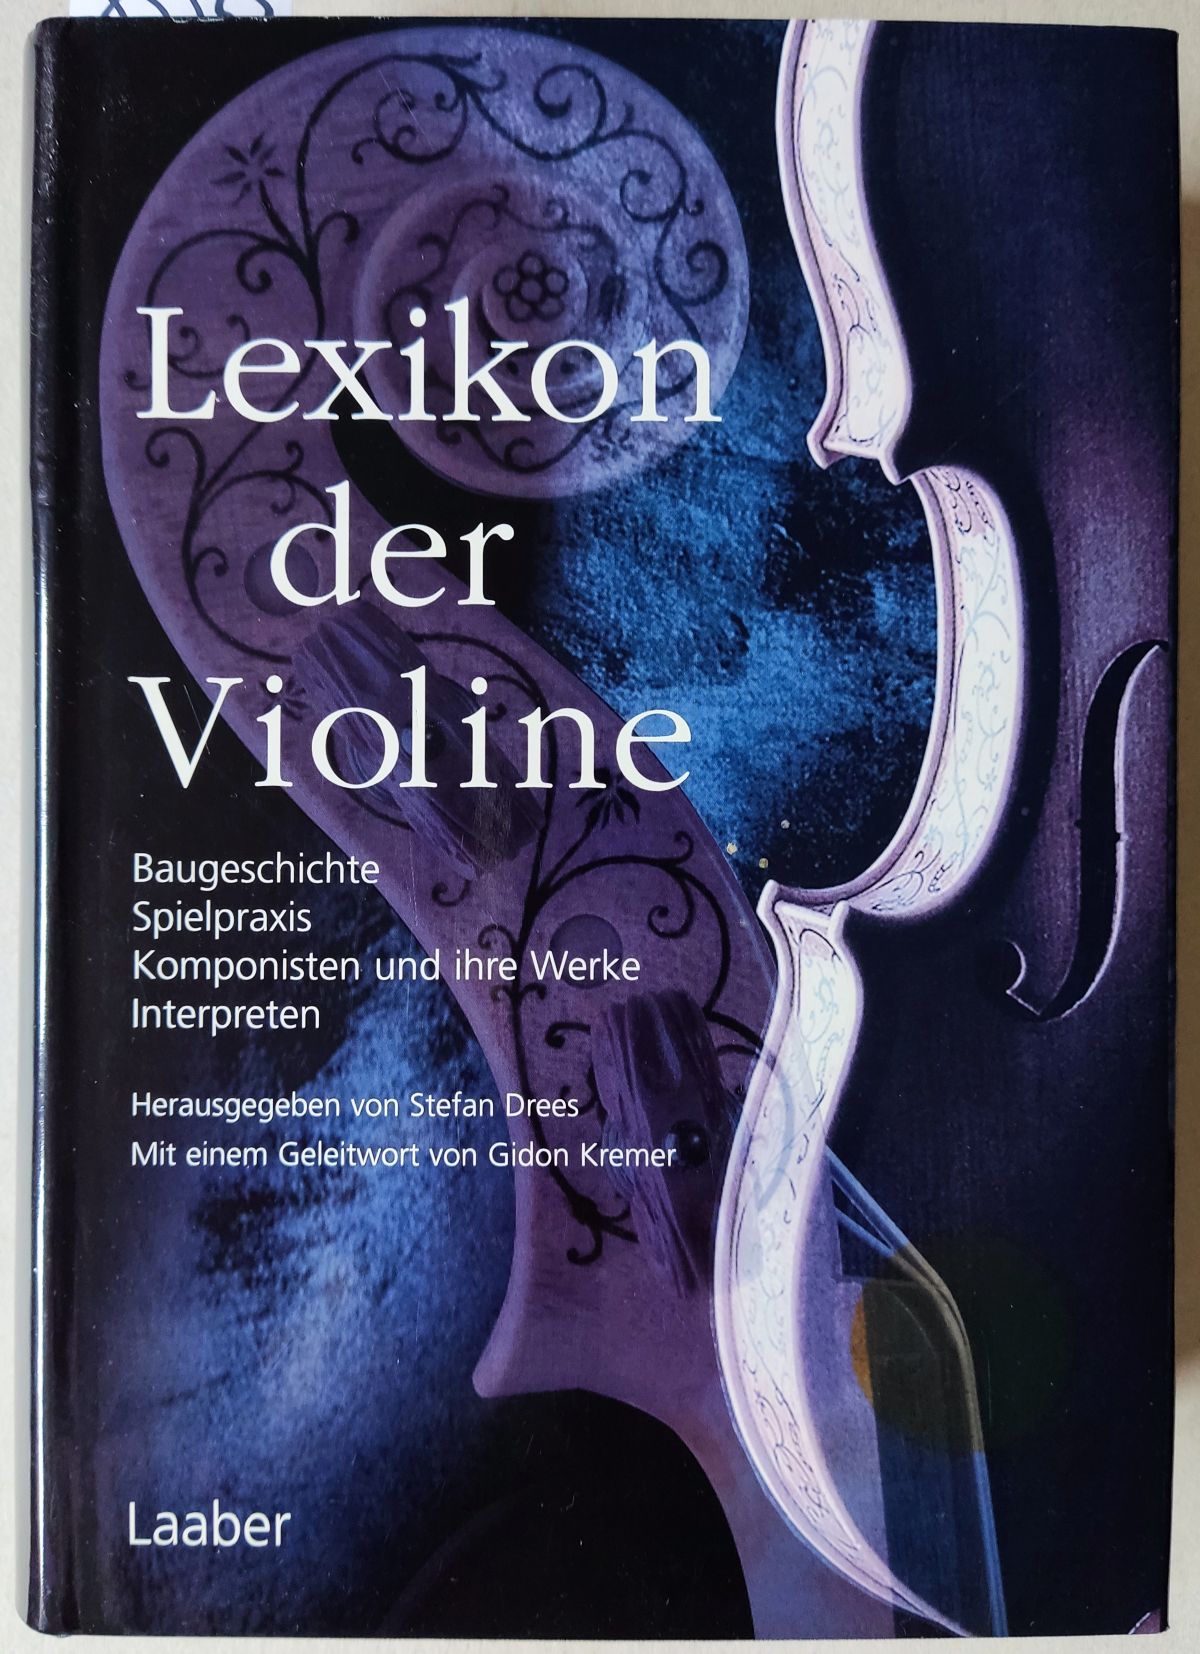 Lexikon der Violine. Baugeschichte - Spielpraxis - Komponisten und ihre Werke - Interpreten. - Drees, Stefan (Herausgeber); Kremer, Gidon (Geleitwort)